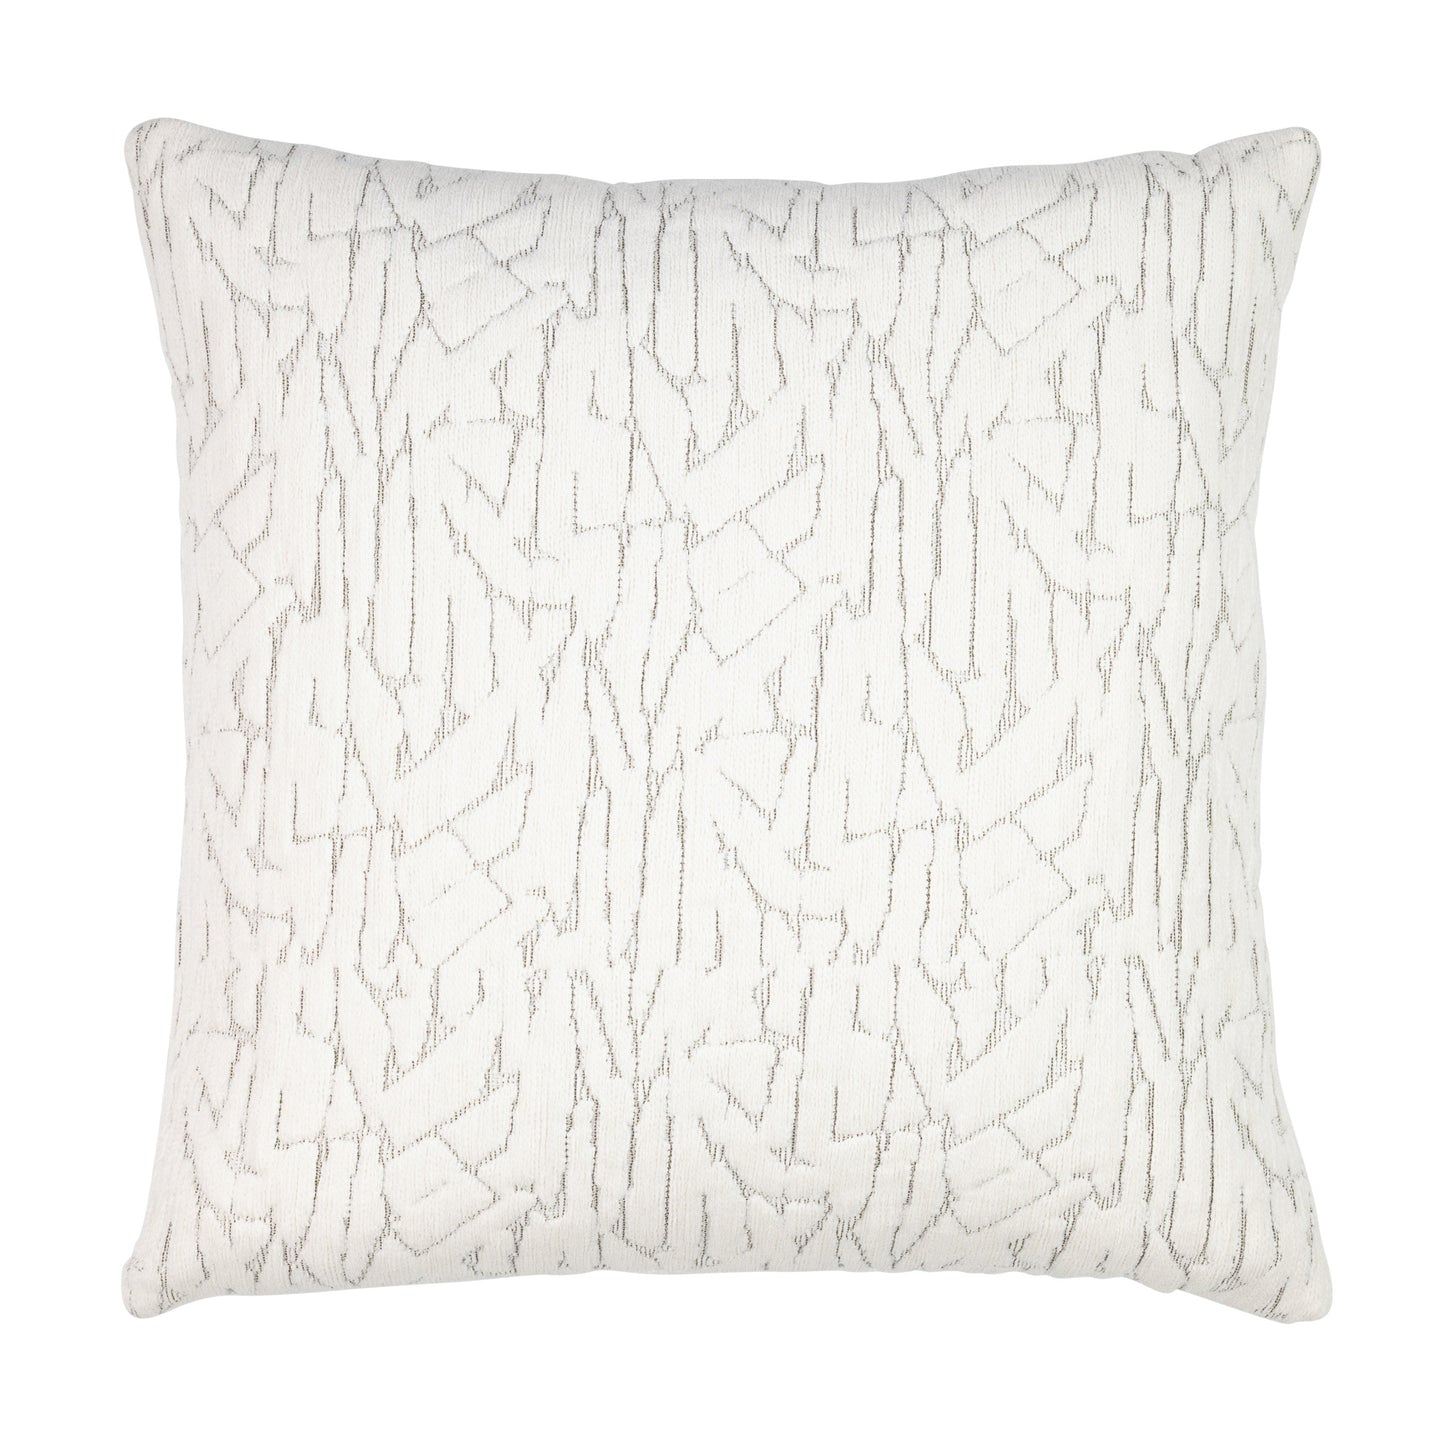 20" Square Elaine Smith Pillow  Synchronize Ivory